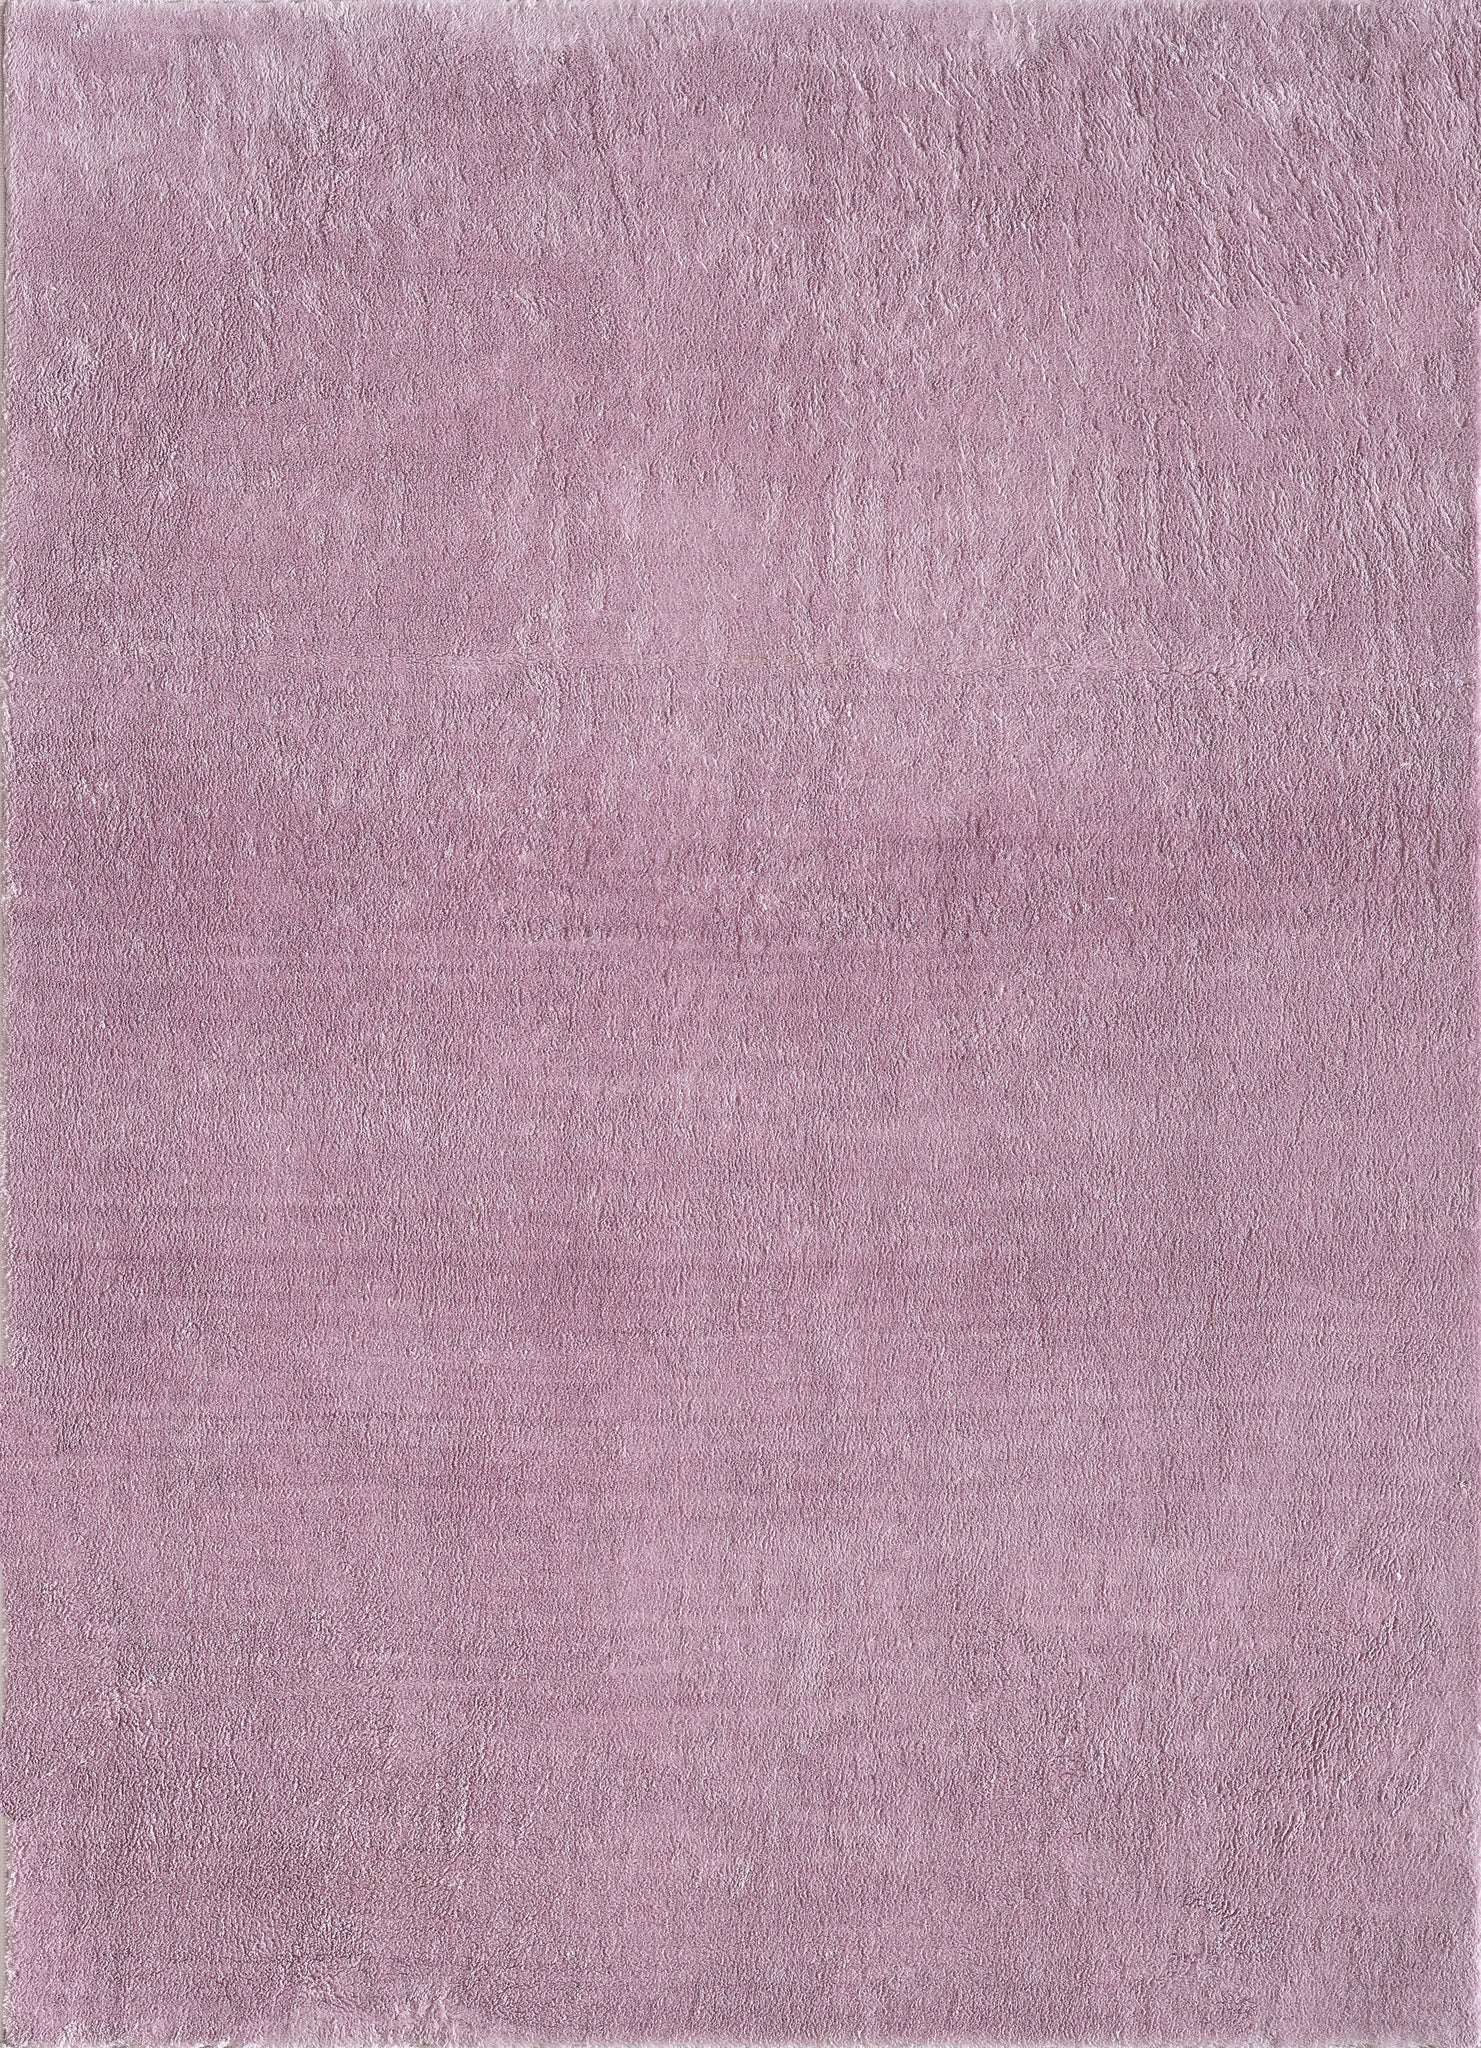  RUGMRZ Teppiche, Dämm- & Schutzmatten Teppich Antirutsch Rosa,  lila, geometrisches Design, Wohnzimmer Teppich, Farbe, weich und schimmel  resistent 200 x 300 cm